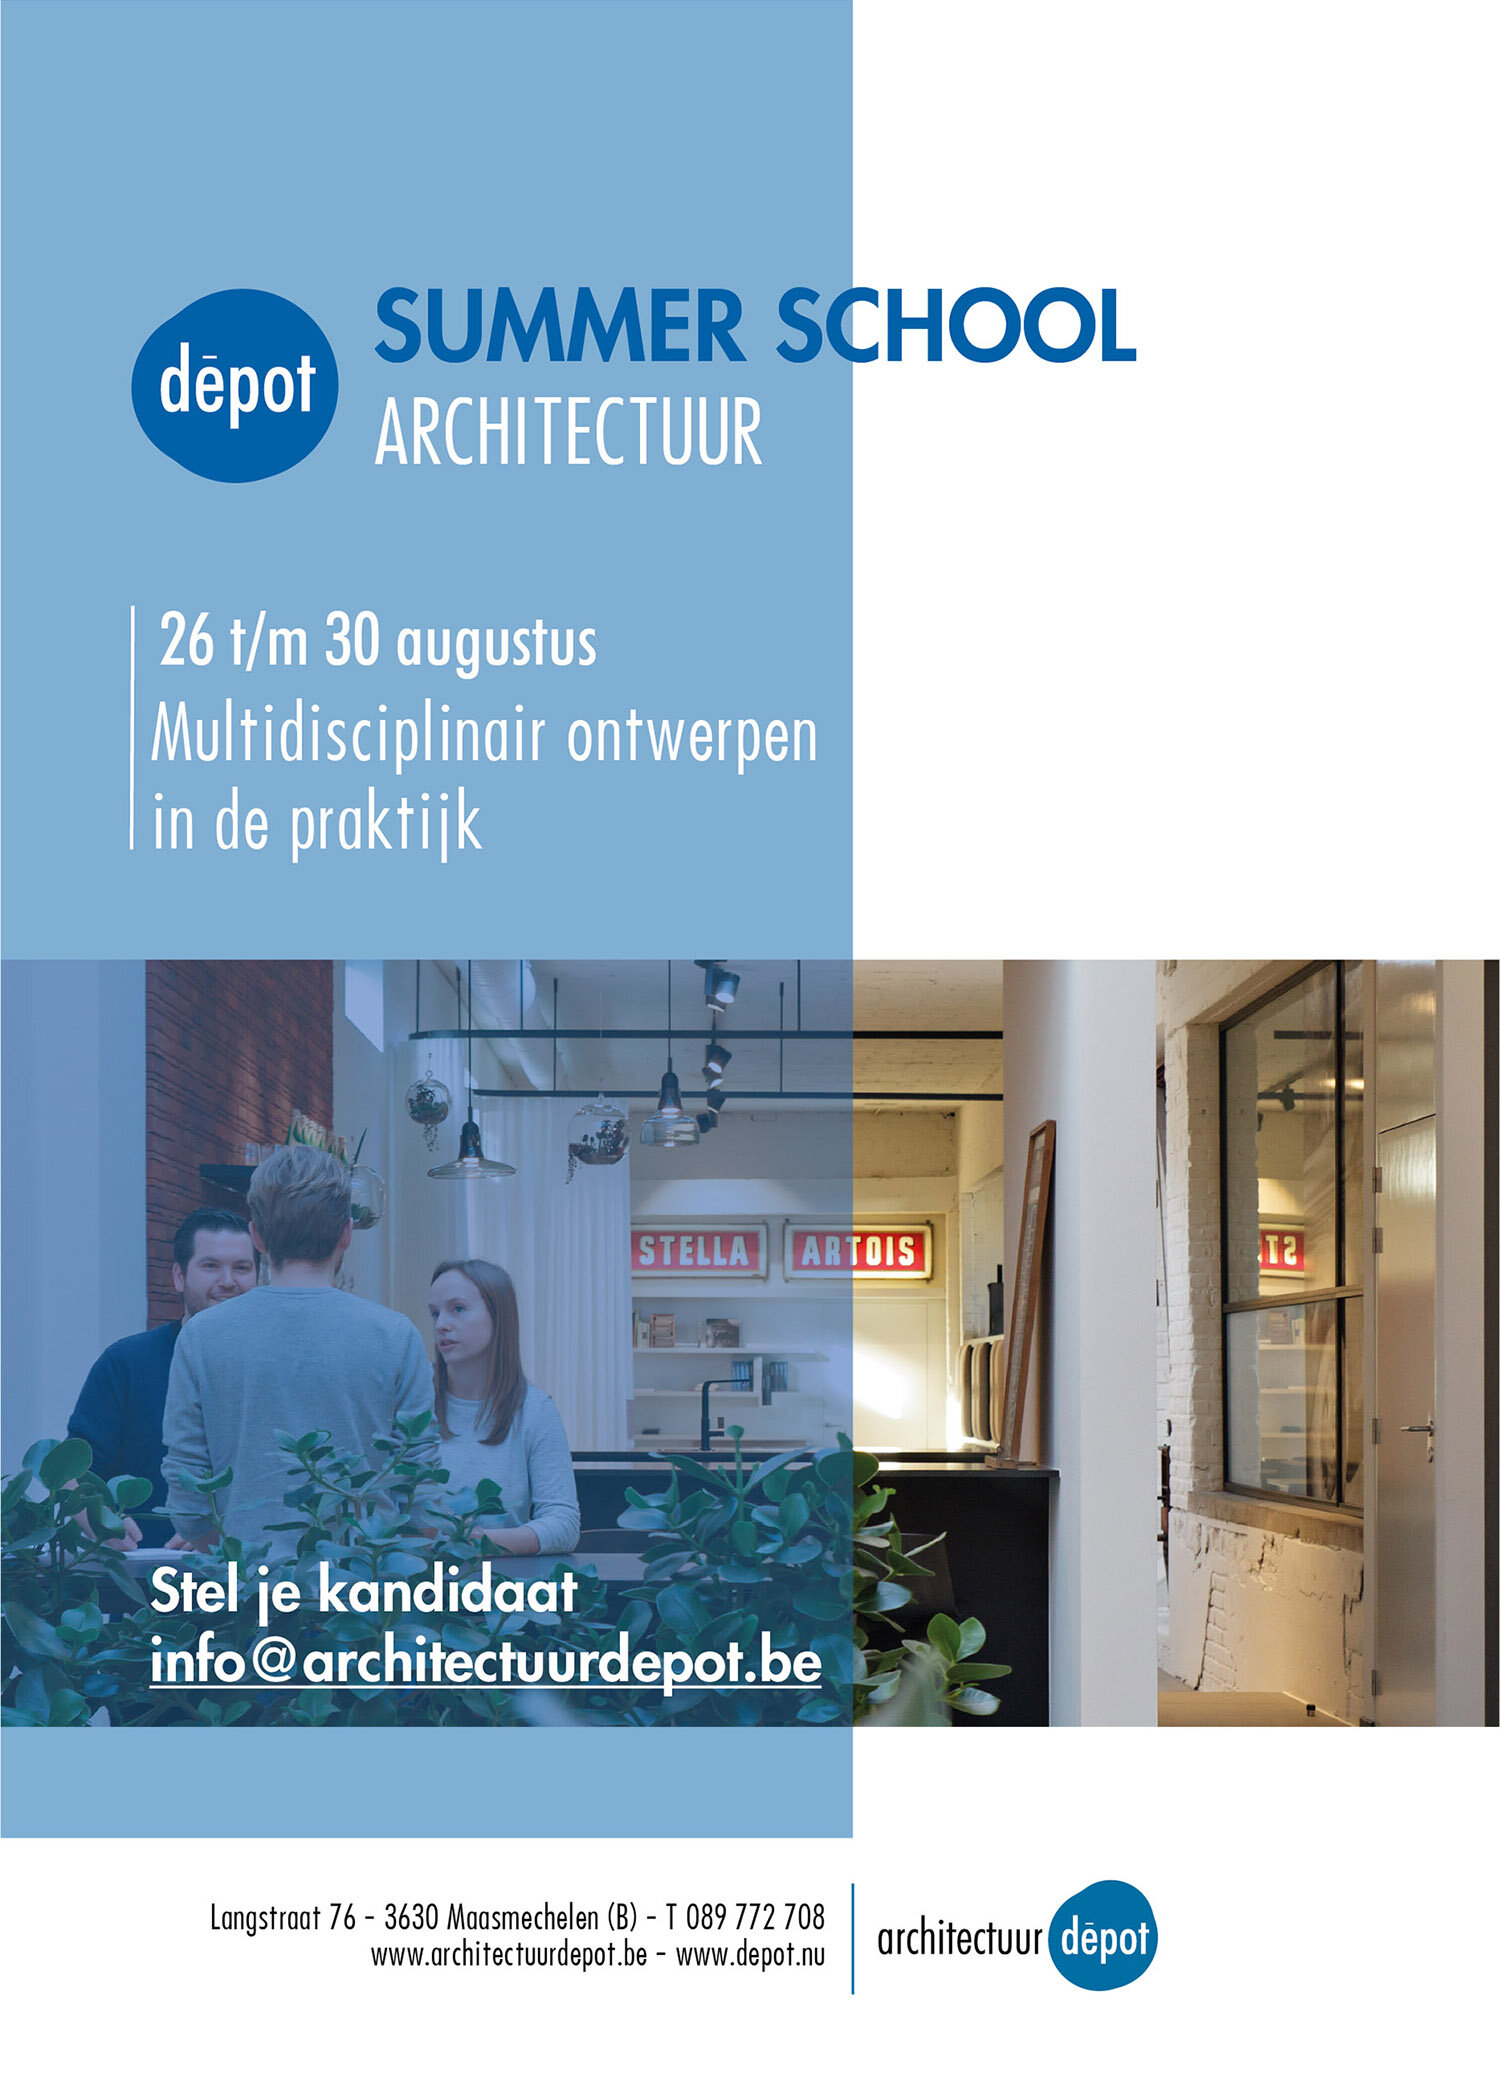 Summer school_architectuur_uitnodiging A5_Tekengebied 1.jpg